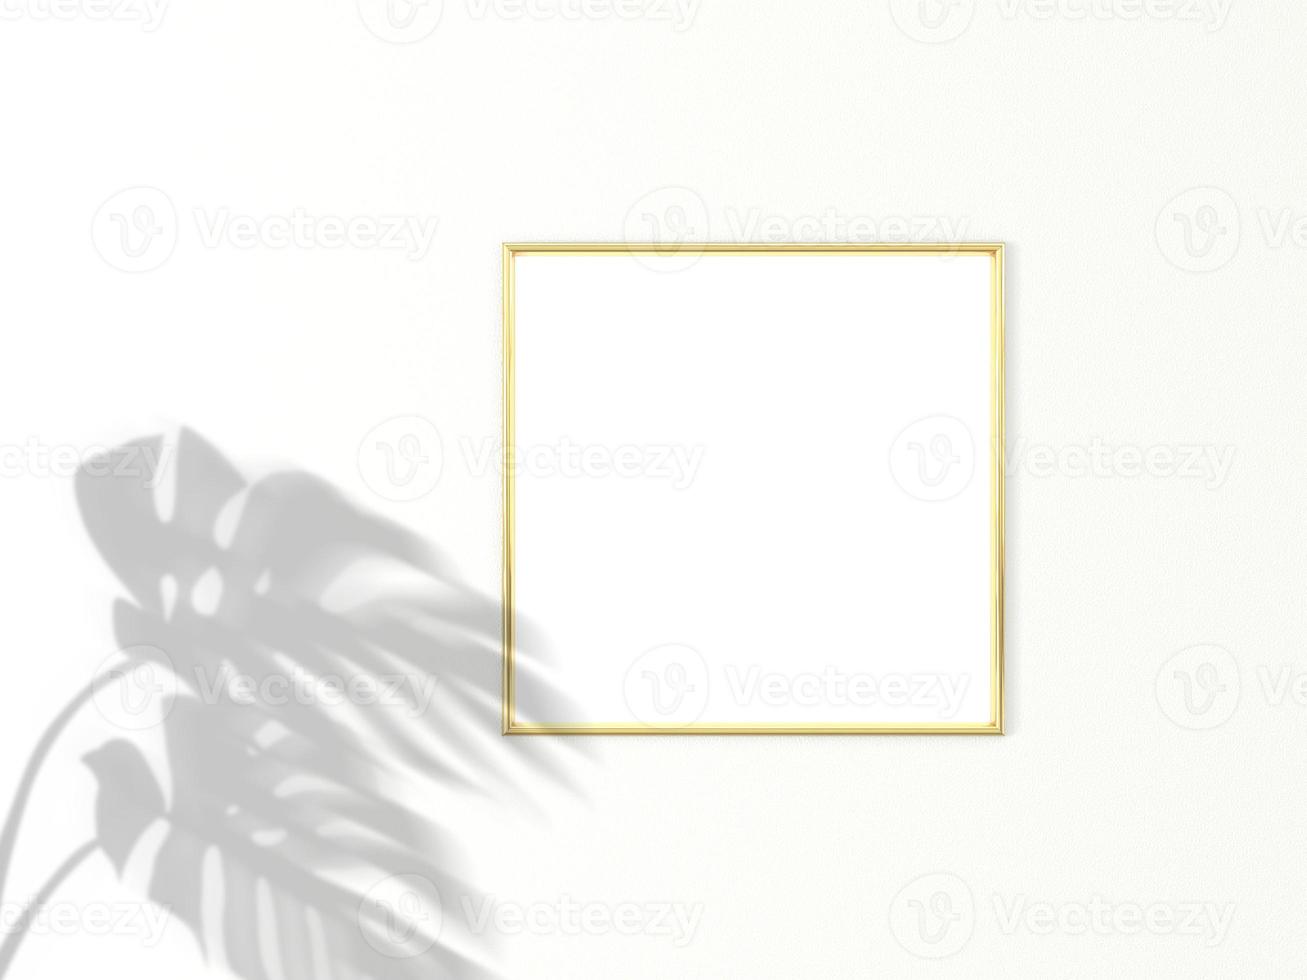 1x1 vierkant gouden frame voor foto of afbeeldingsmodel op witte achtergrond met schaduw van monsterabladeren. 3D-rendering.